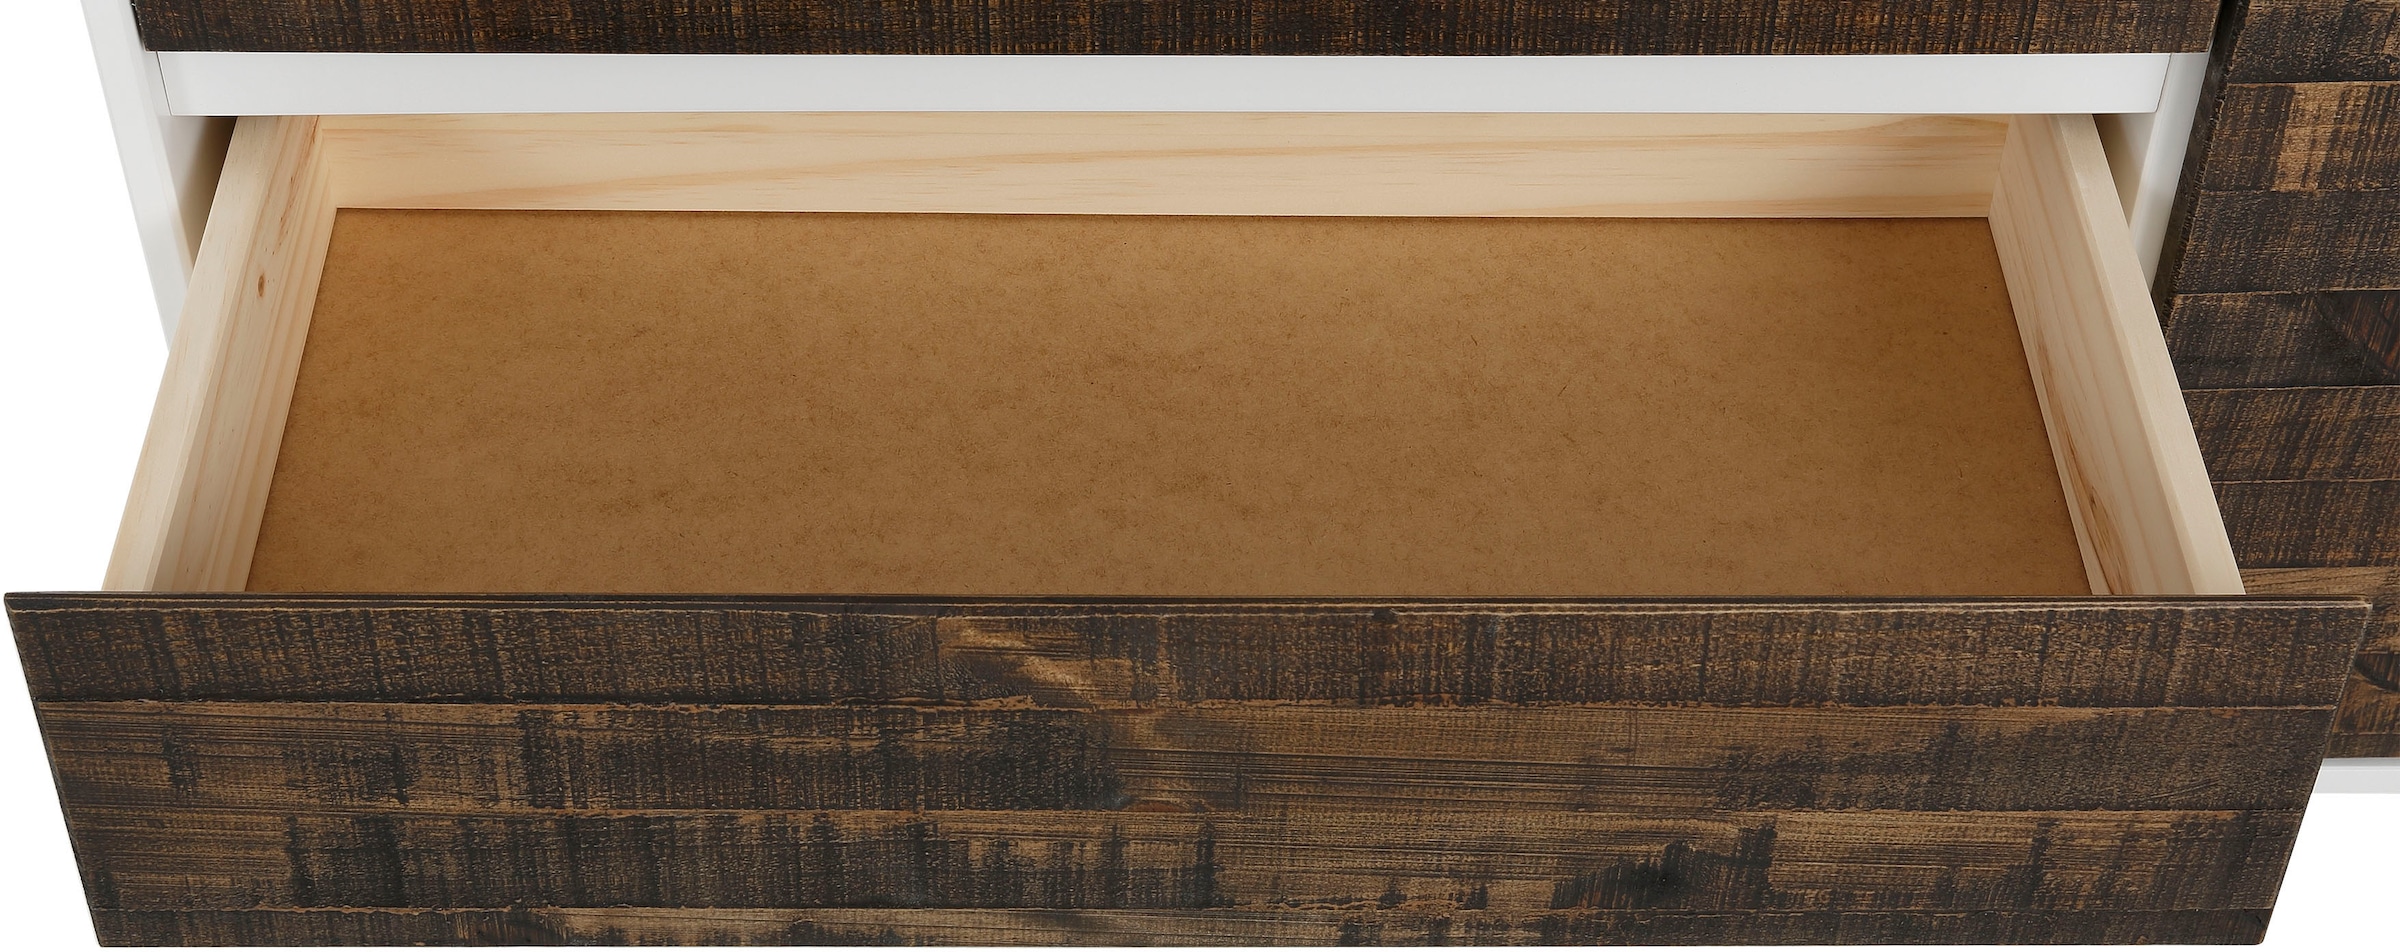 Home affaire Sideboard »Morgan«, aus massivem Kiefernholz, mit eingefrästen Griffmulden, Breite 165 cm